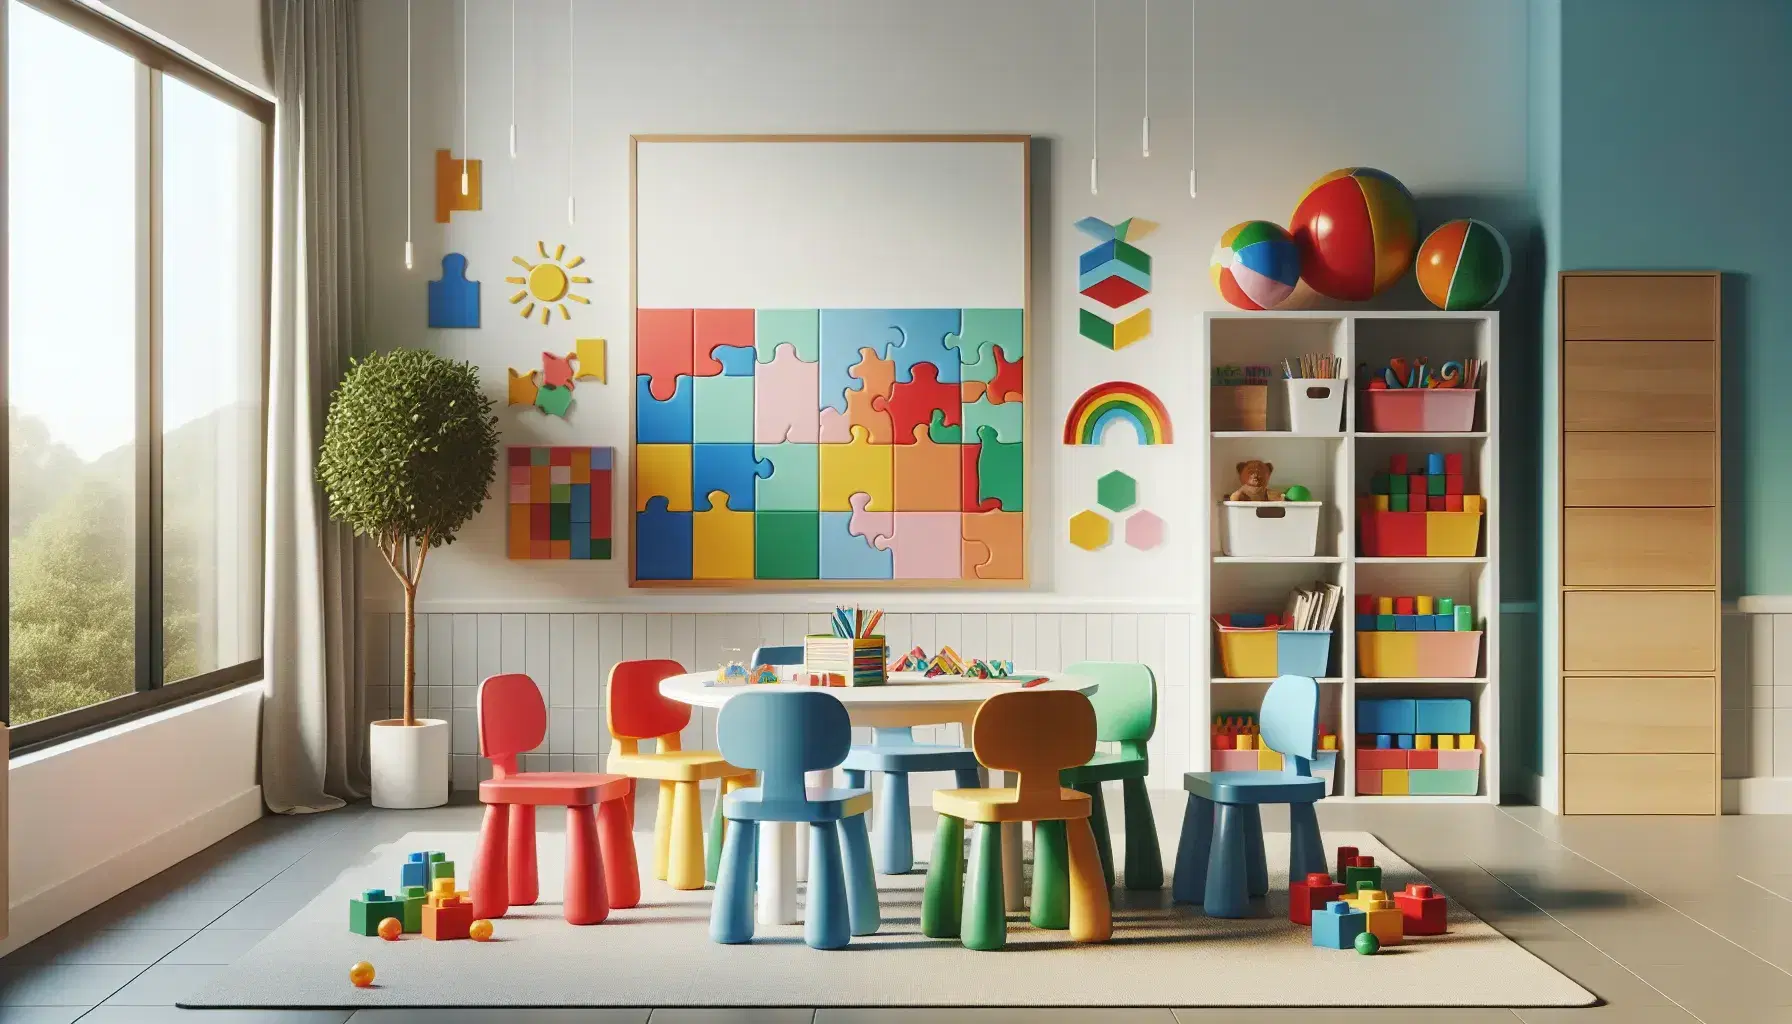 Aula colorida con mesa redonda y sillas plásticas roja, azul, verde y amarilla, rompecabezas, libros, bloques geométricos, pizarra blanca y estantería con juguetes.